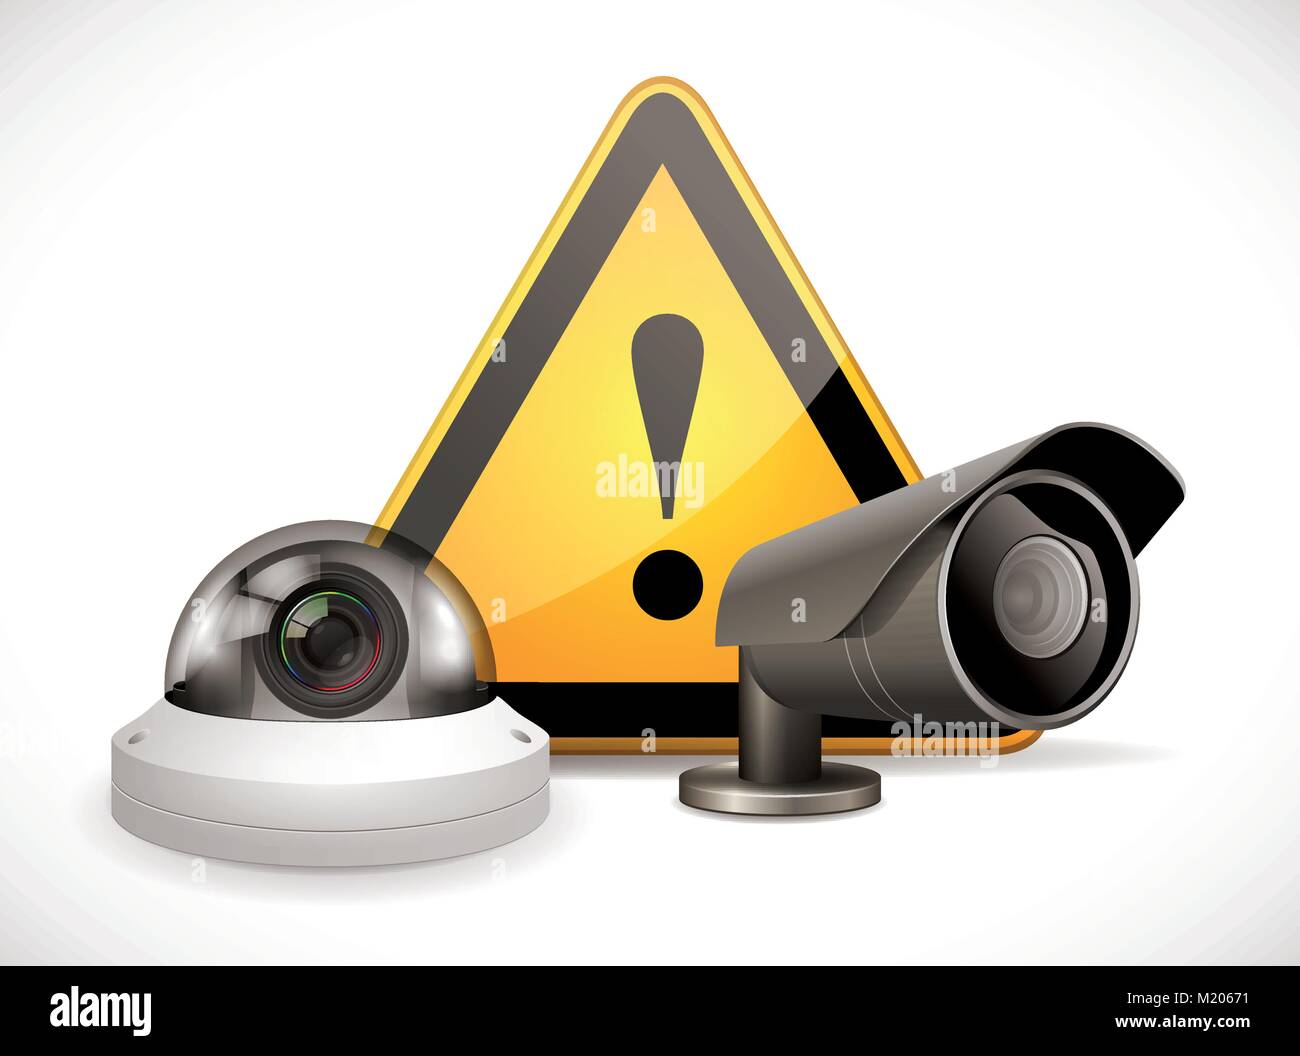 Symbole de vidéosurveillance - Caméra de sécurité avec panneau d'avertissement Illustration de Vecteur